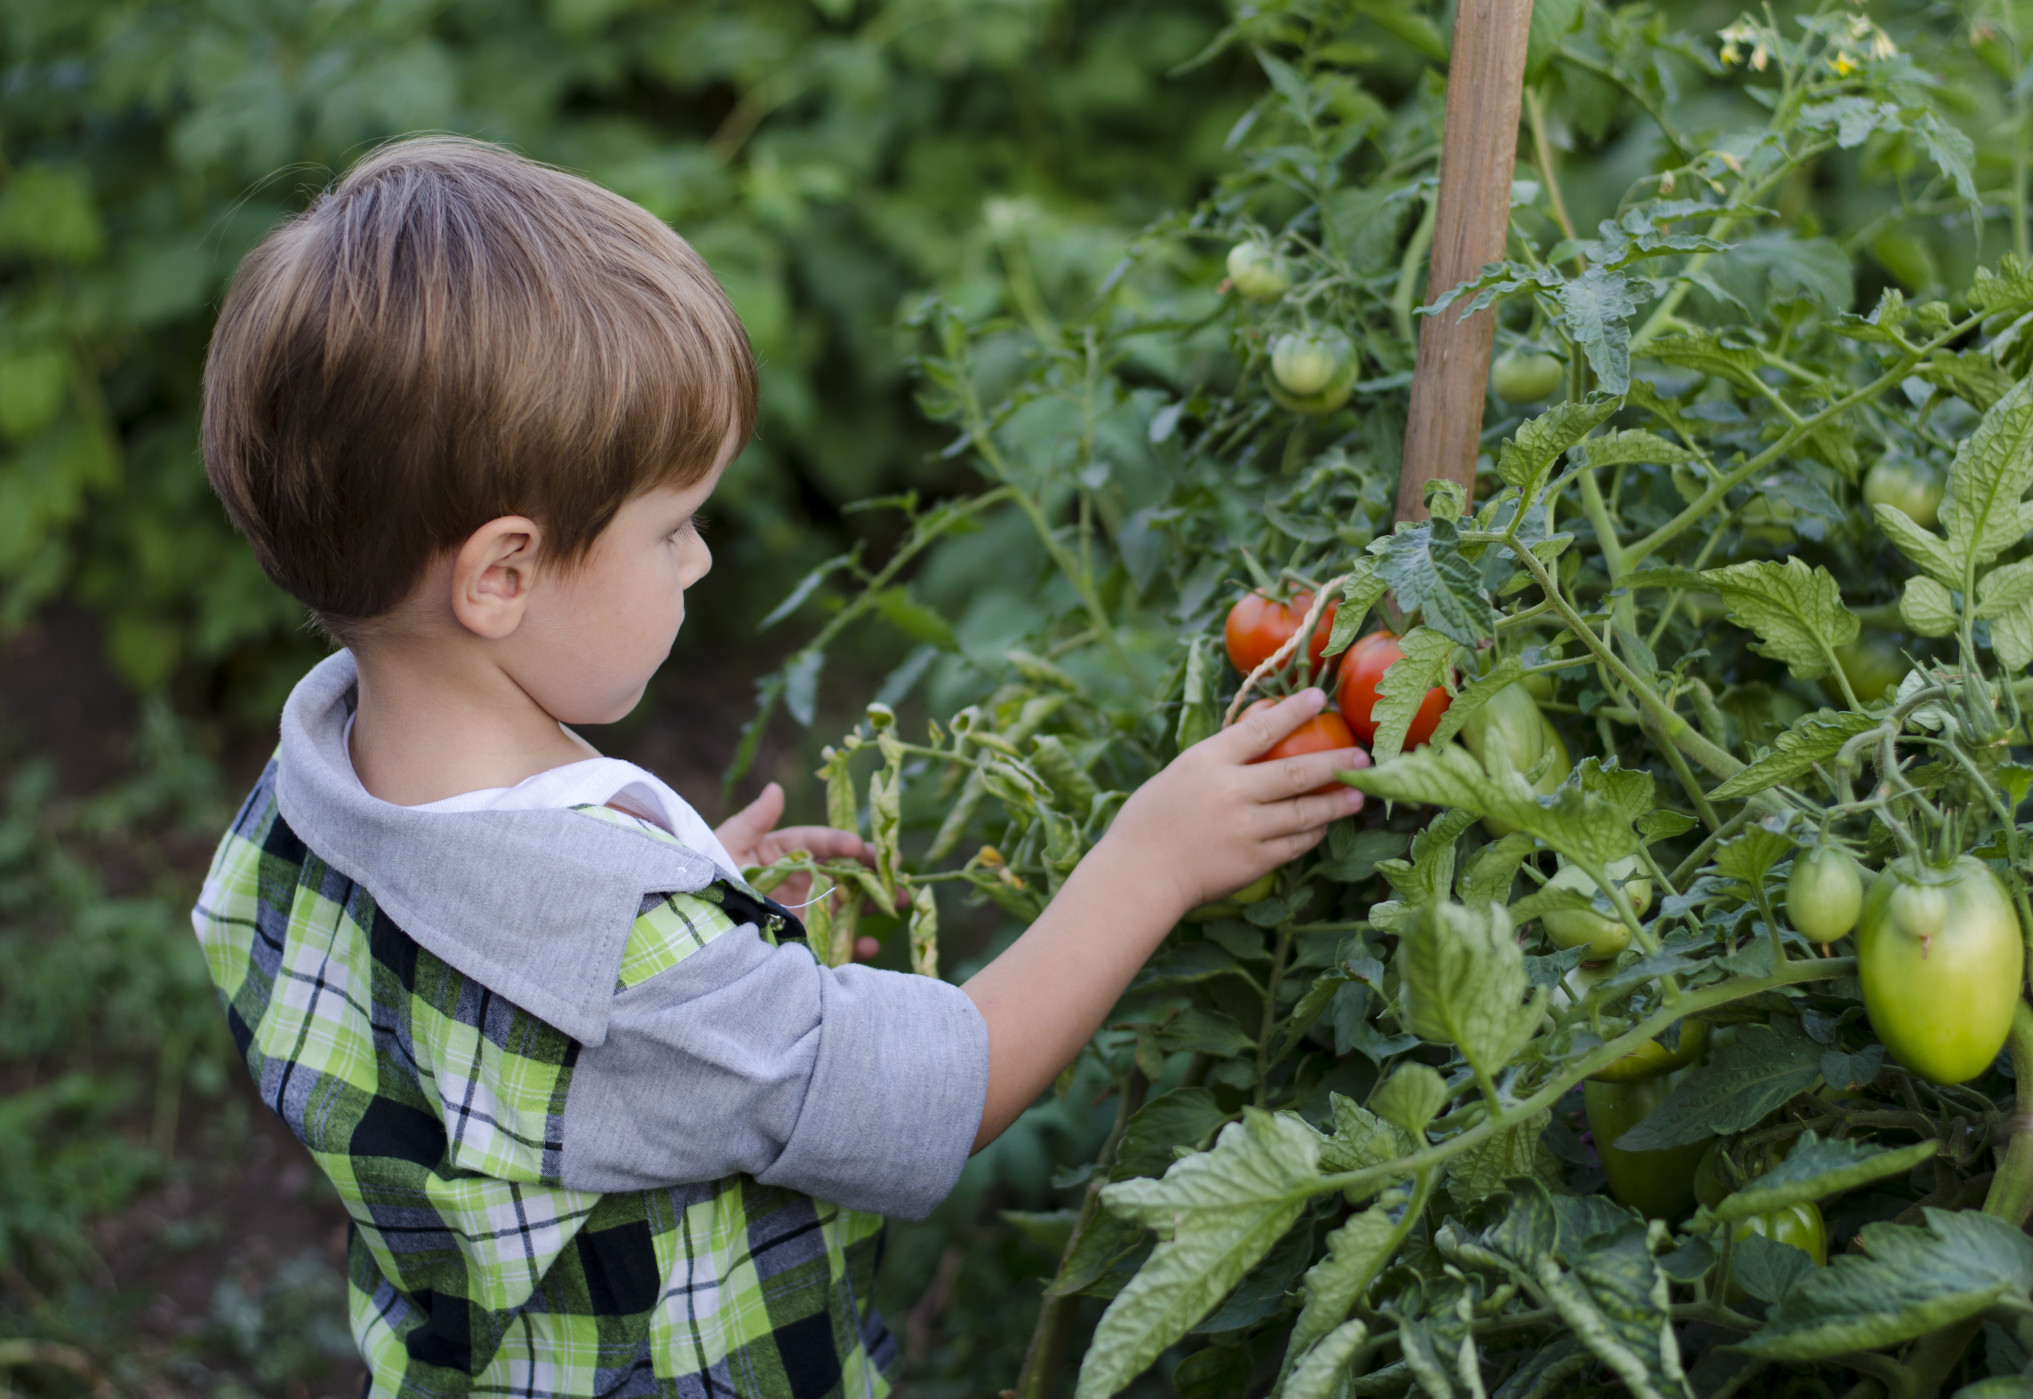 Tomatenpflanzen & die richtigen Nachbarn beachten! Bild: @yusanita.ru via Twenty20